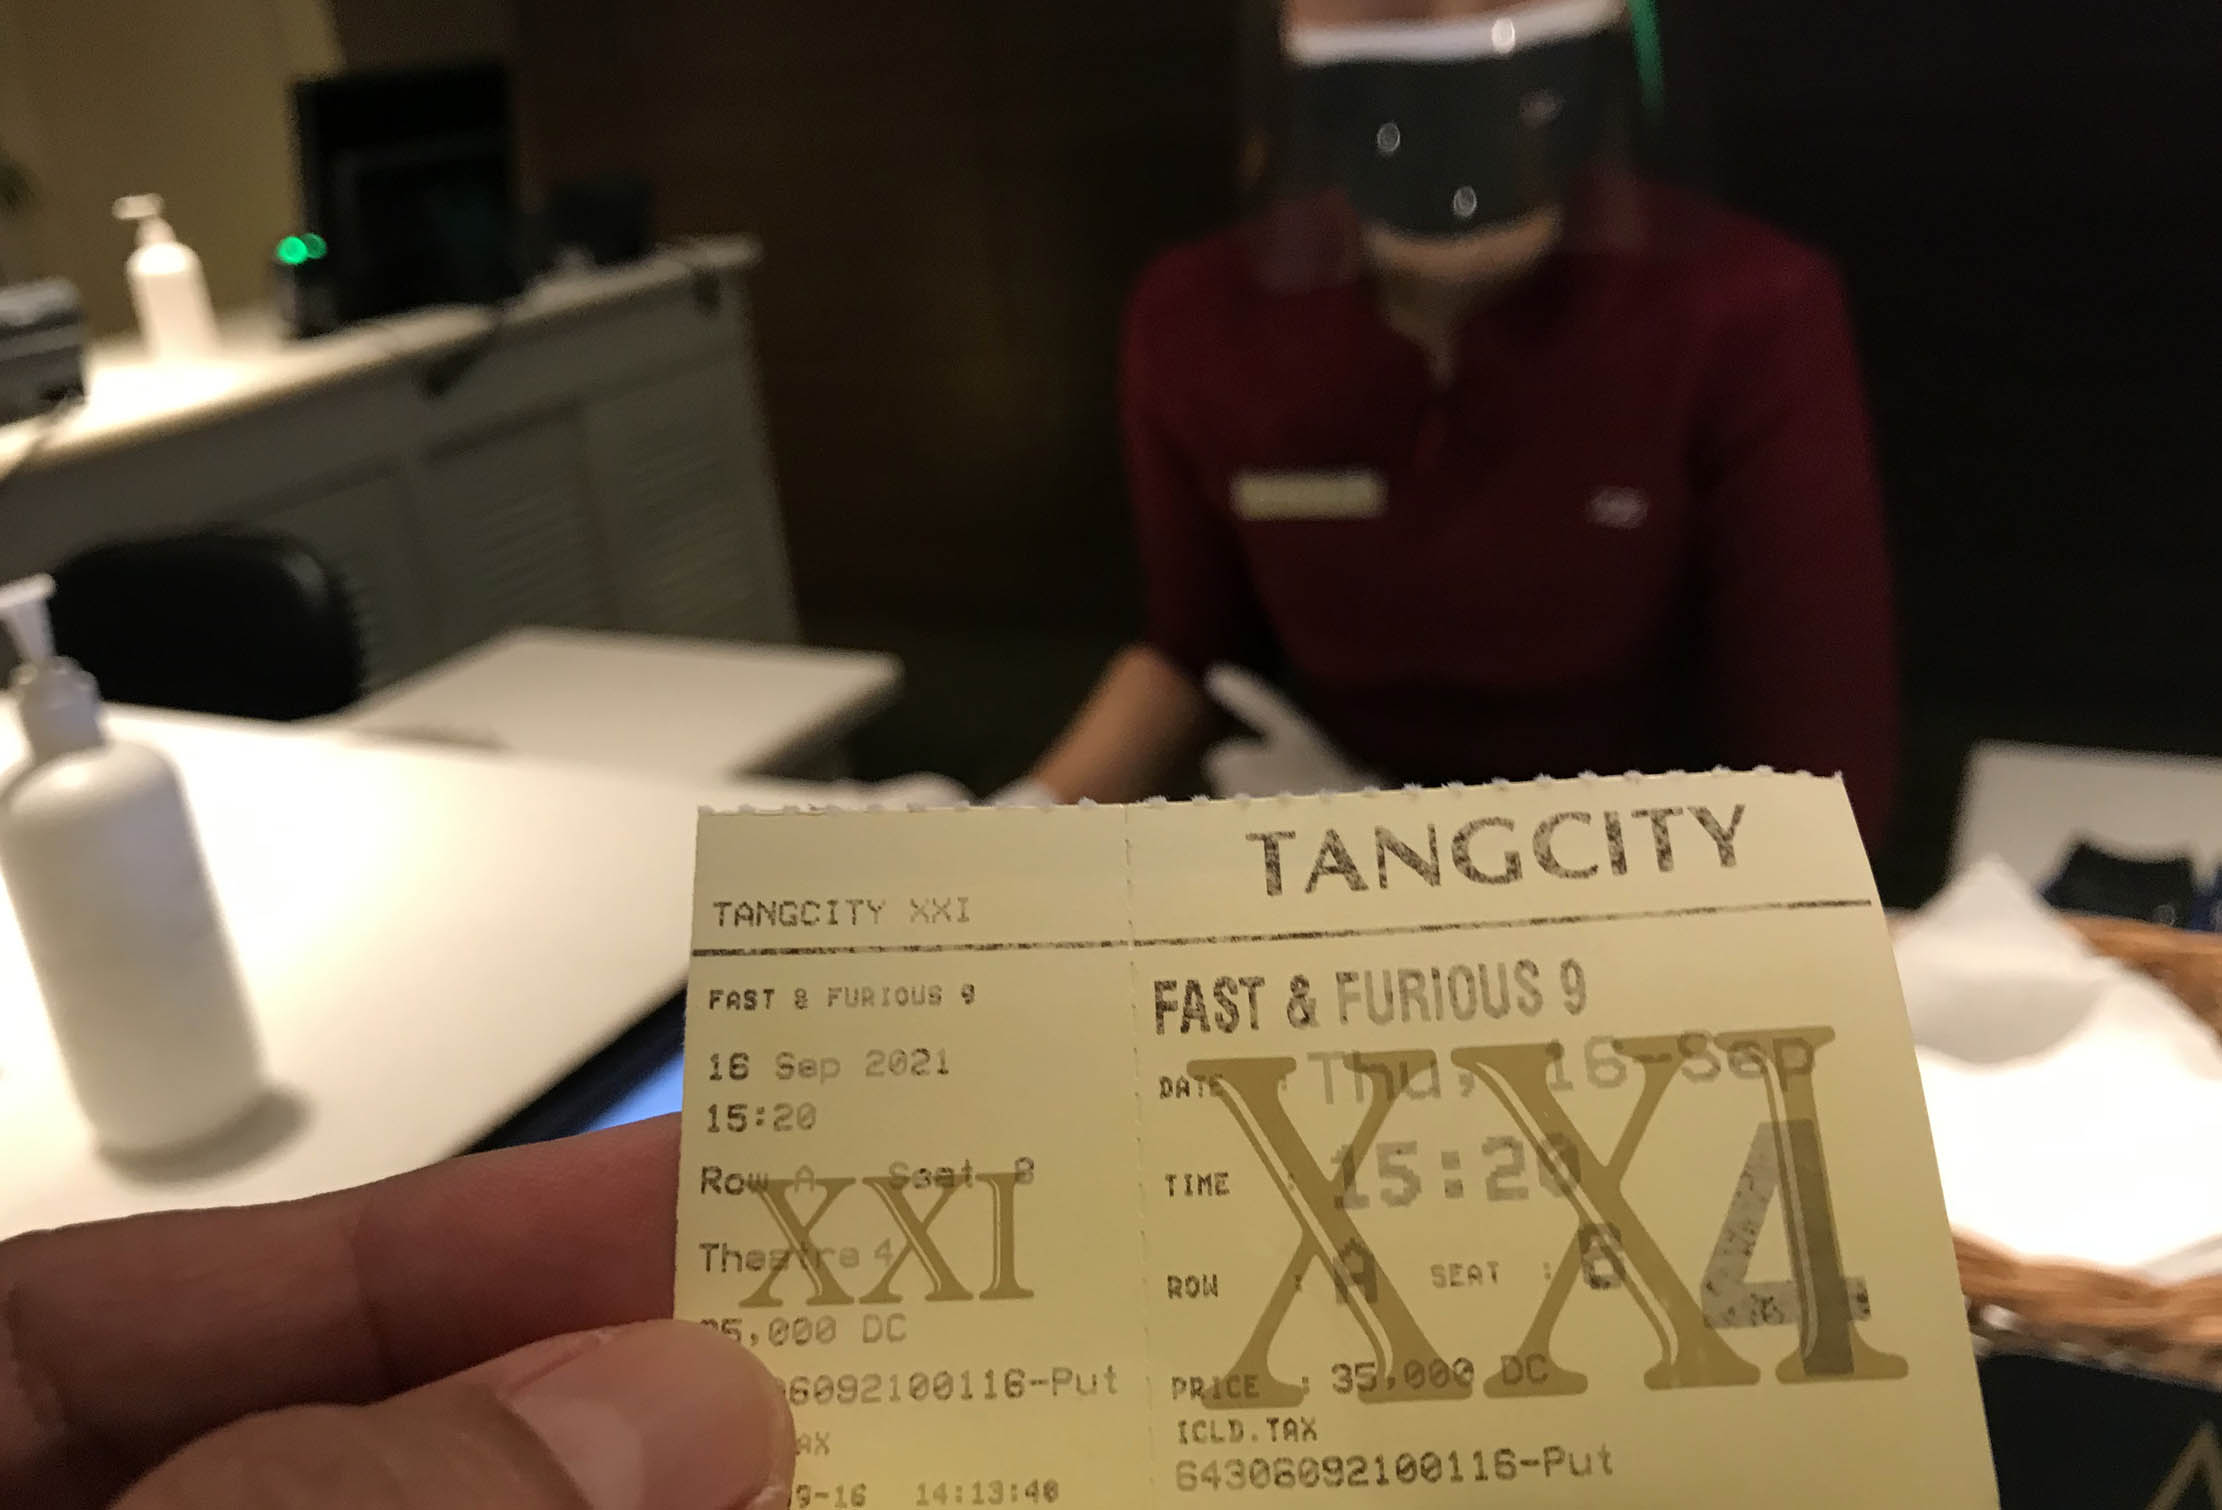 Pengunjung menunjukkan tiket film XXI yang diputar hari ini di sebuah pusat perbelanjaan Kota Tangerang, Kamis 16 September 2021. Foto : Panji Asmoro/TrenAsia